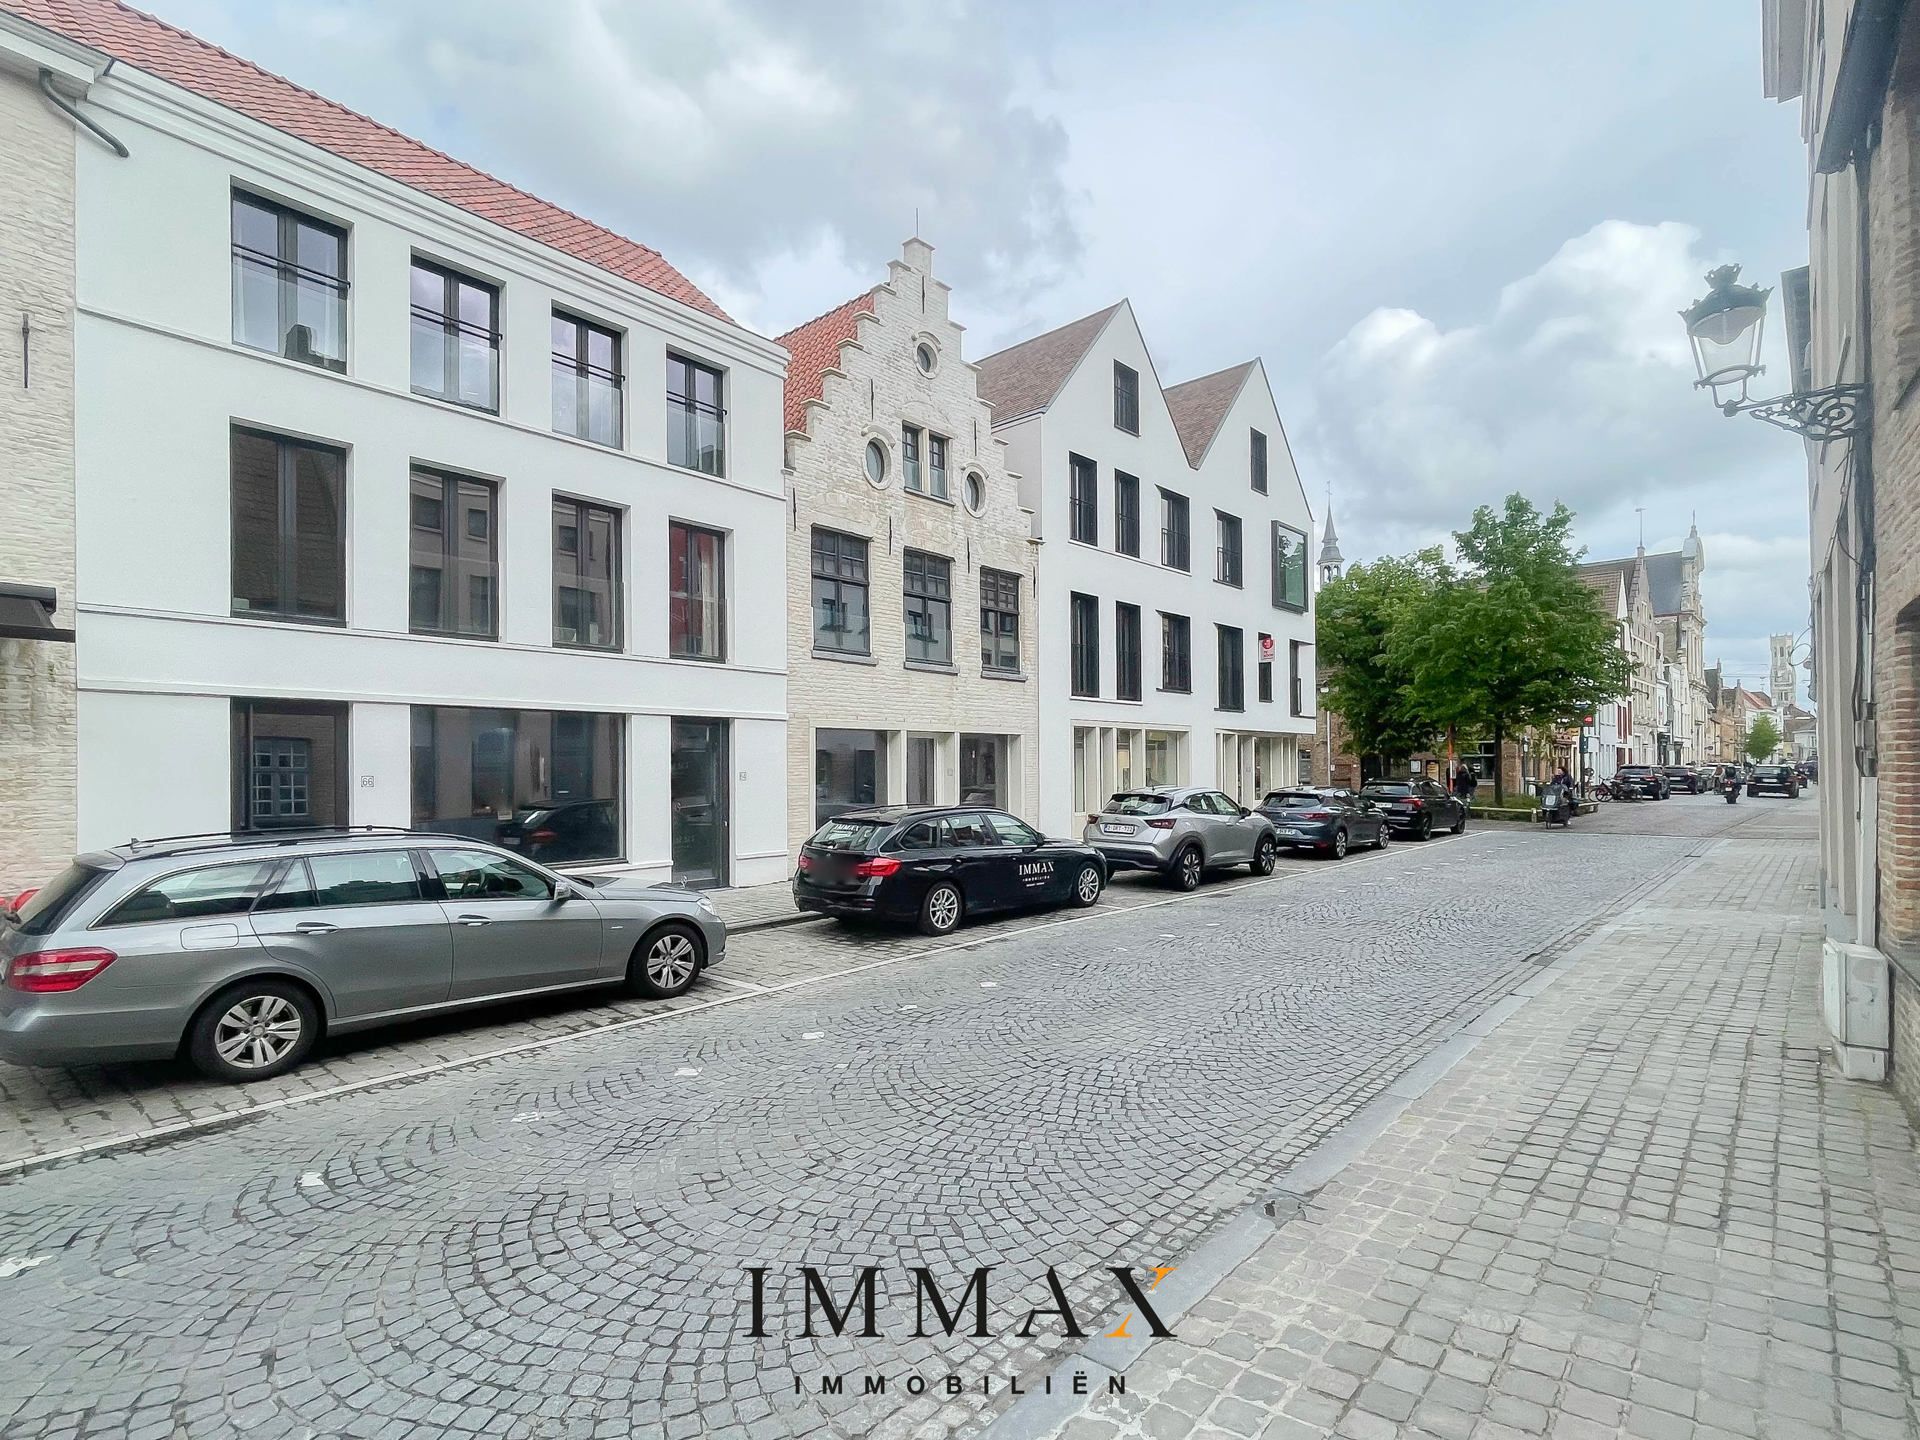 Commerciële ruimte te huur Ezelstraat 62 - 8000 Brugge